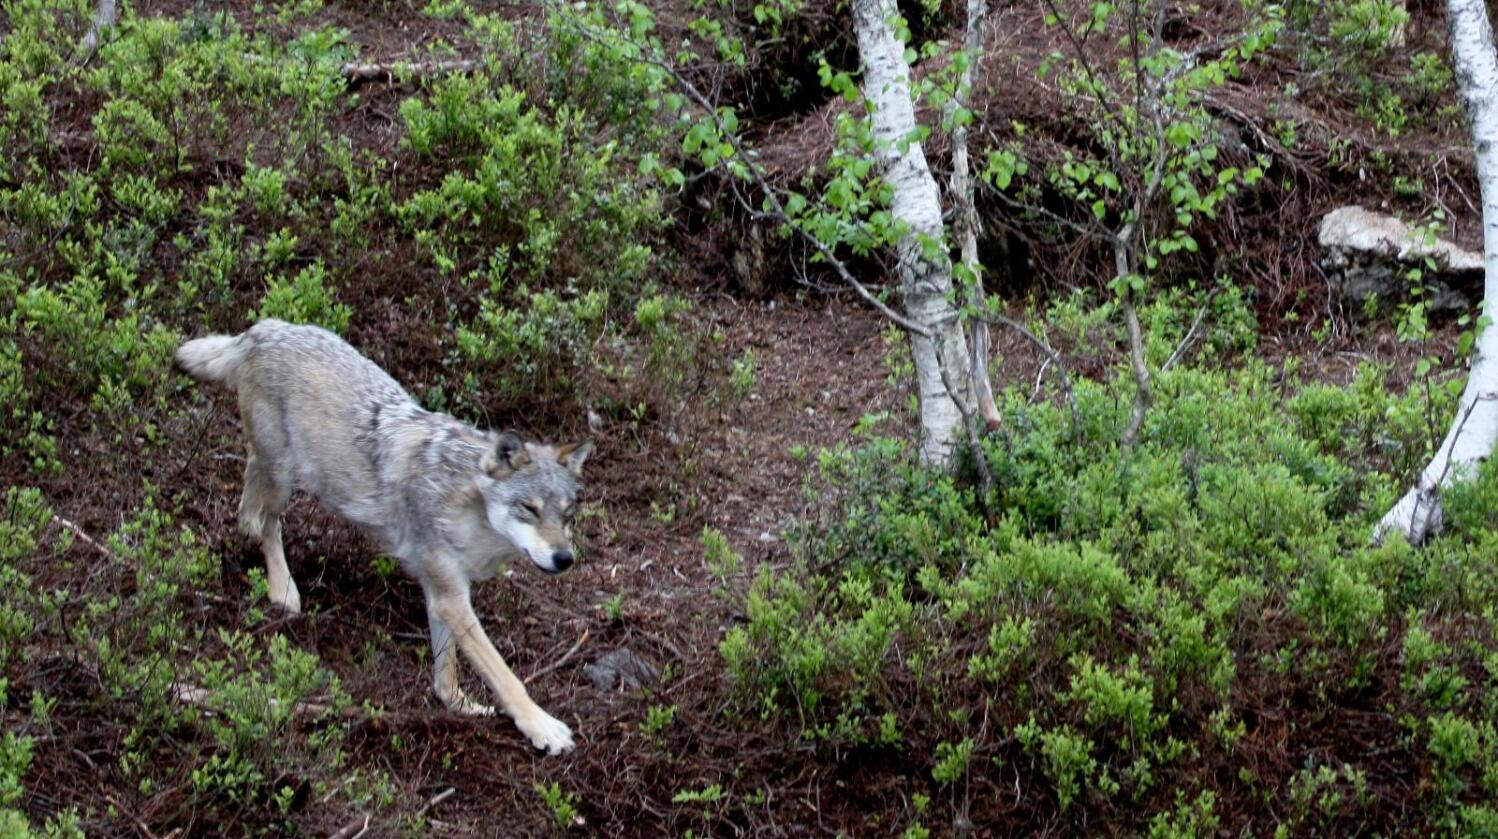 Nordmenn blir mer positive til rovdyrvern. Forsker Ketil Skogen tror grunnen er at stadig færre har tilknytning til landbruket. Foto: Kjetil S. Grønnestad